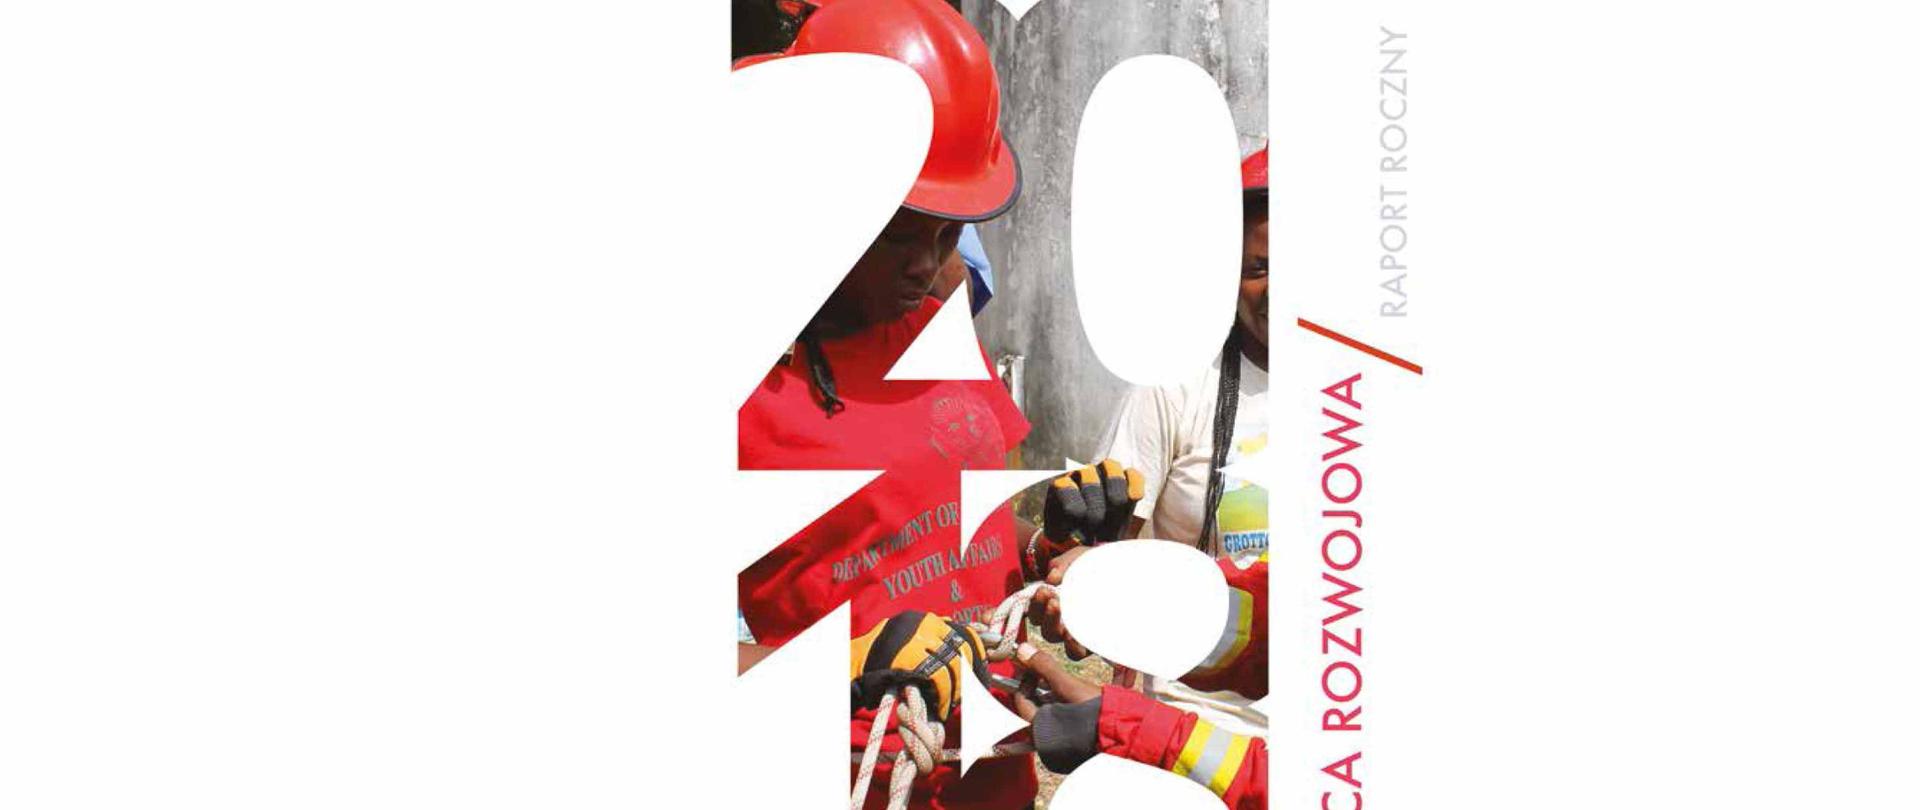 Polska współpraca rozwojowa - Raport roczny 2018 - kobiety uczą się zawodu strażaka